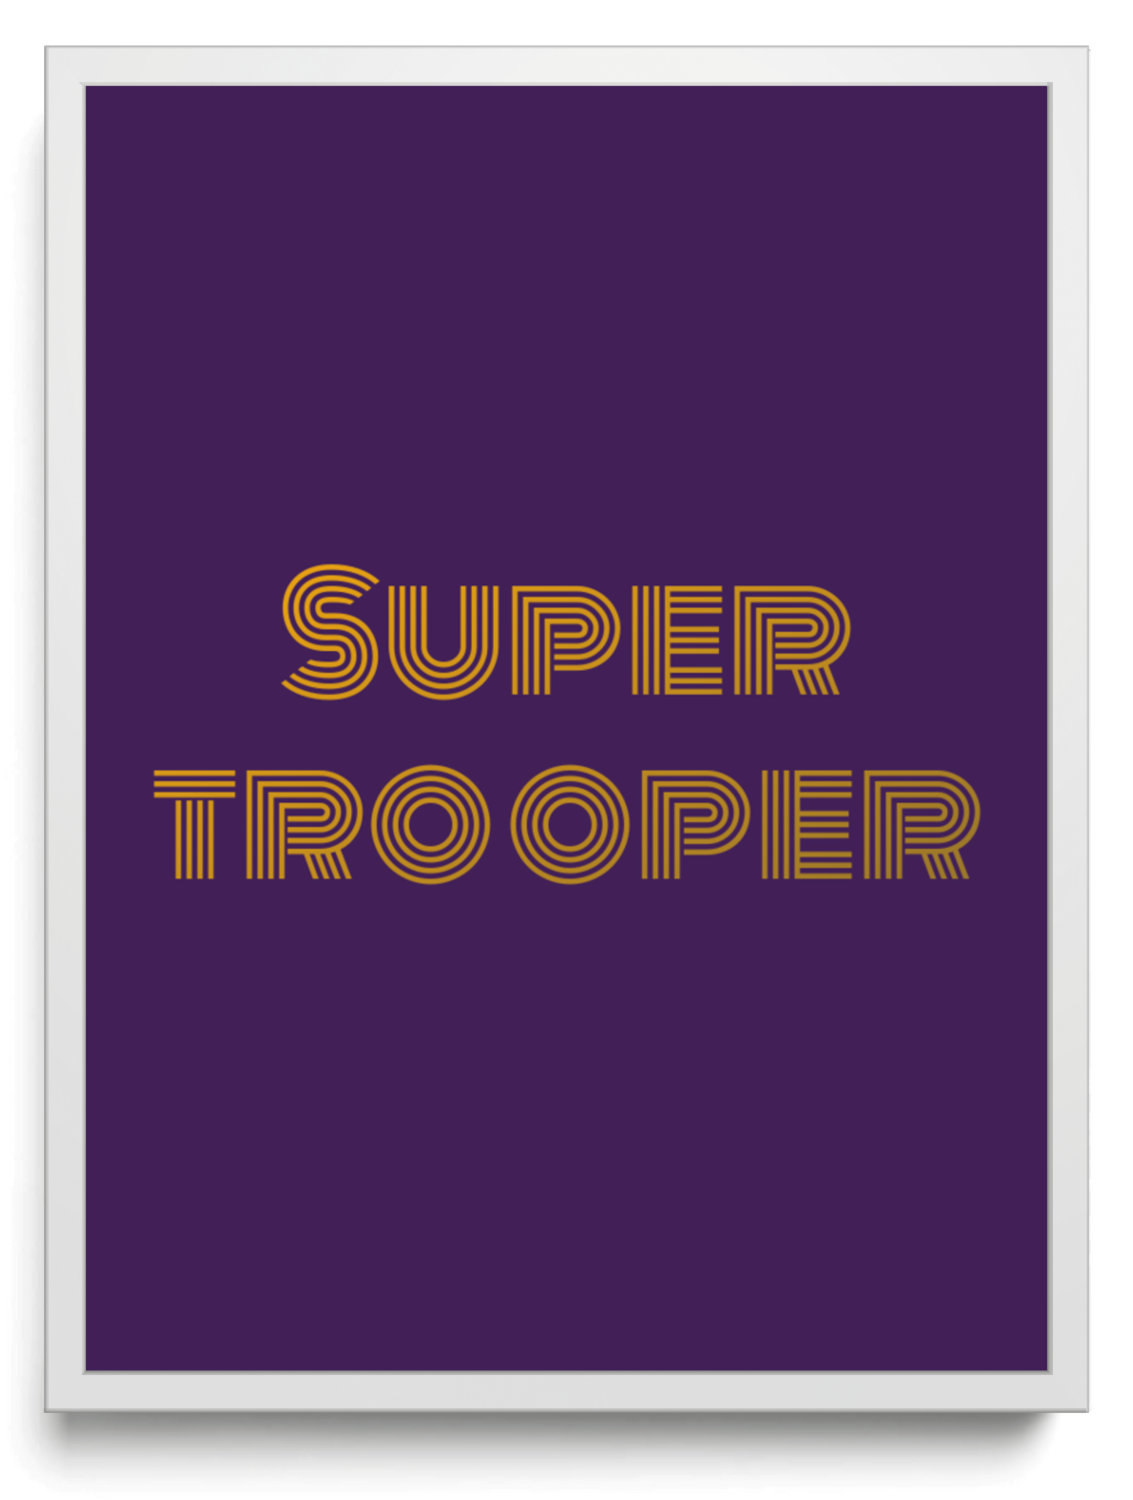 Super trooper framed typographic print